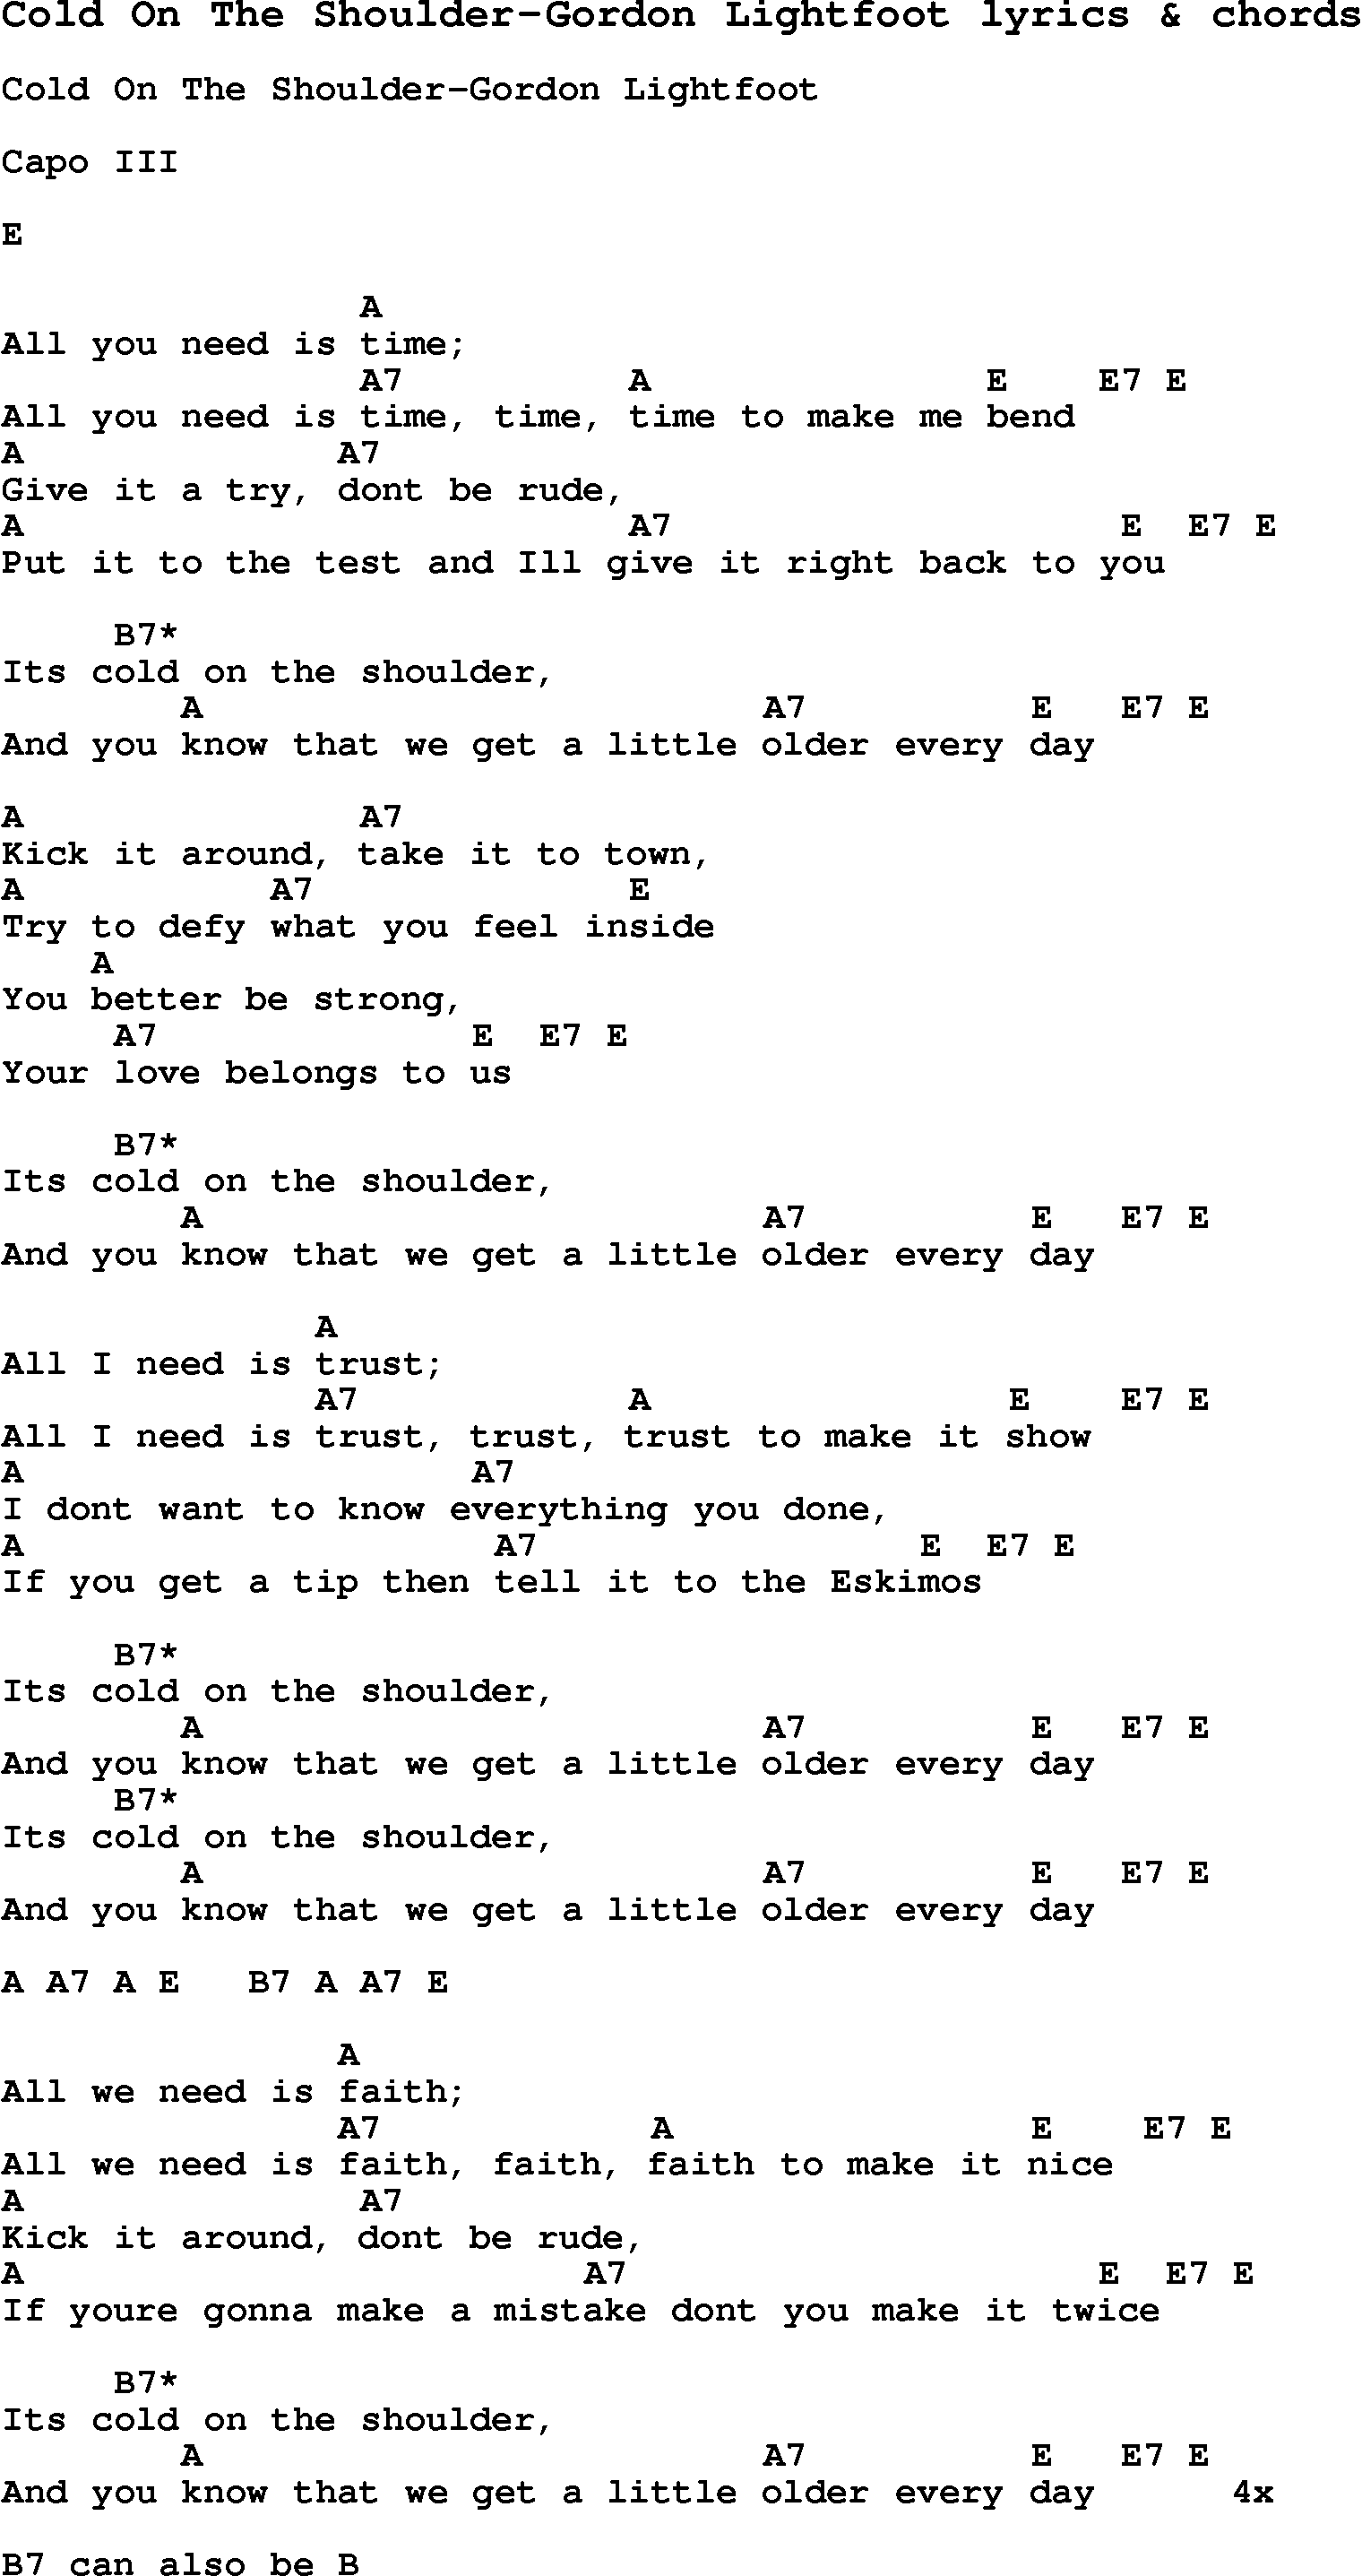 Love Song Lyrics for: Cold On The Shoulder-Gordon Lightfoot with chords for Ukulele, Guitar Banjo etc.